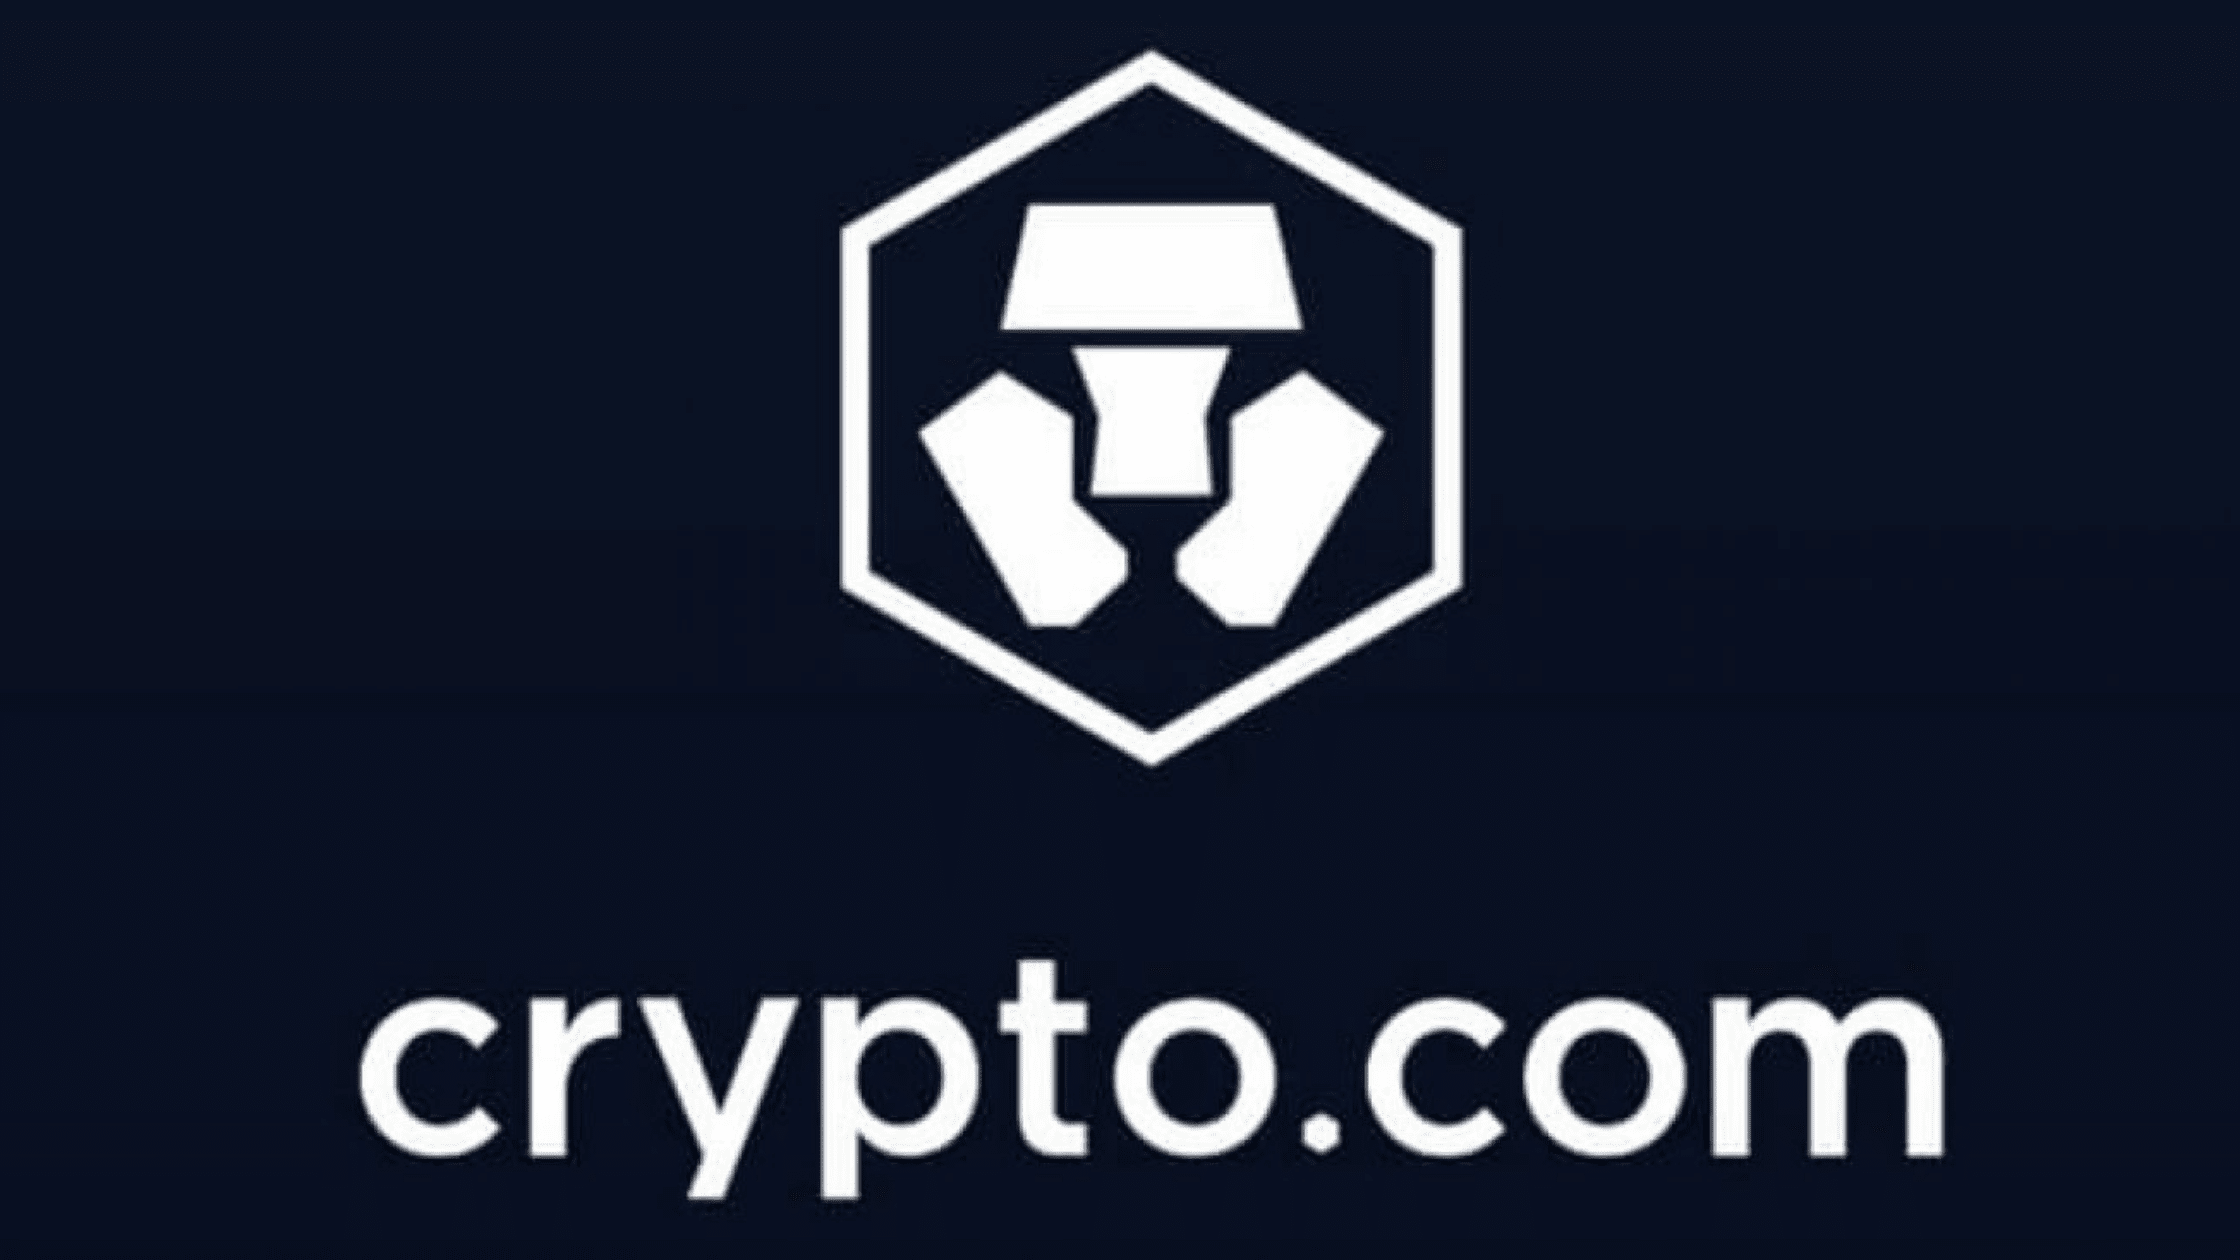 Crypto.com DeFi Wallet Review